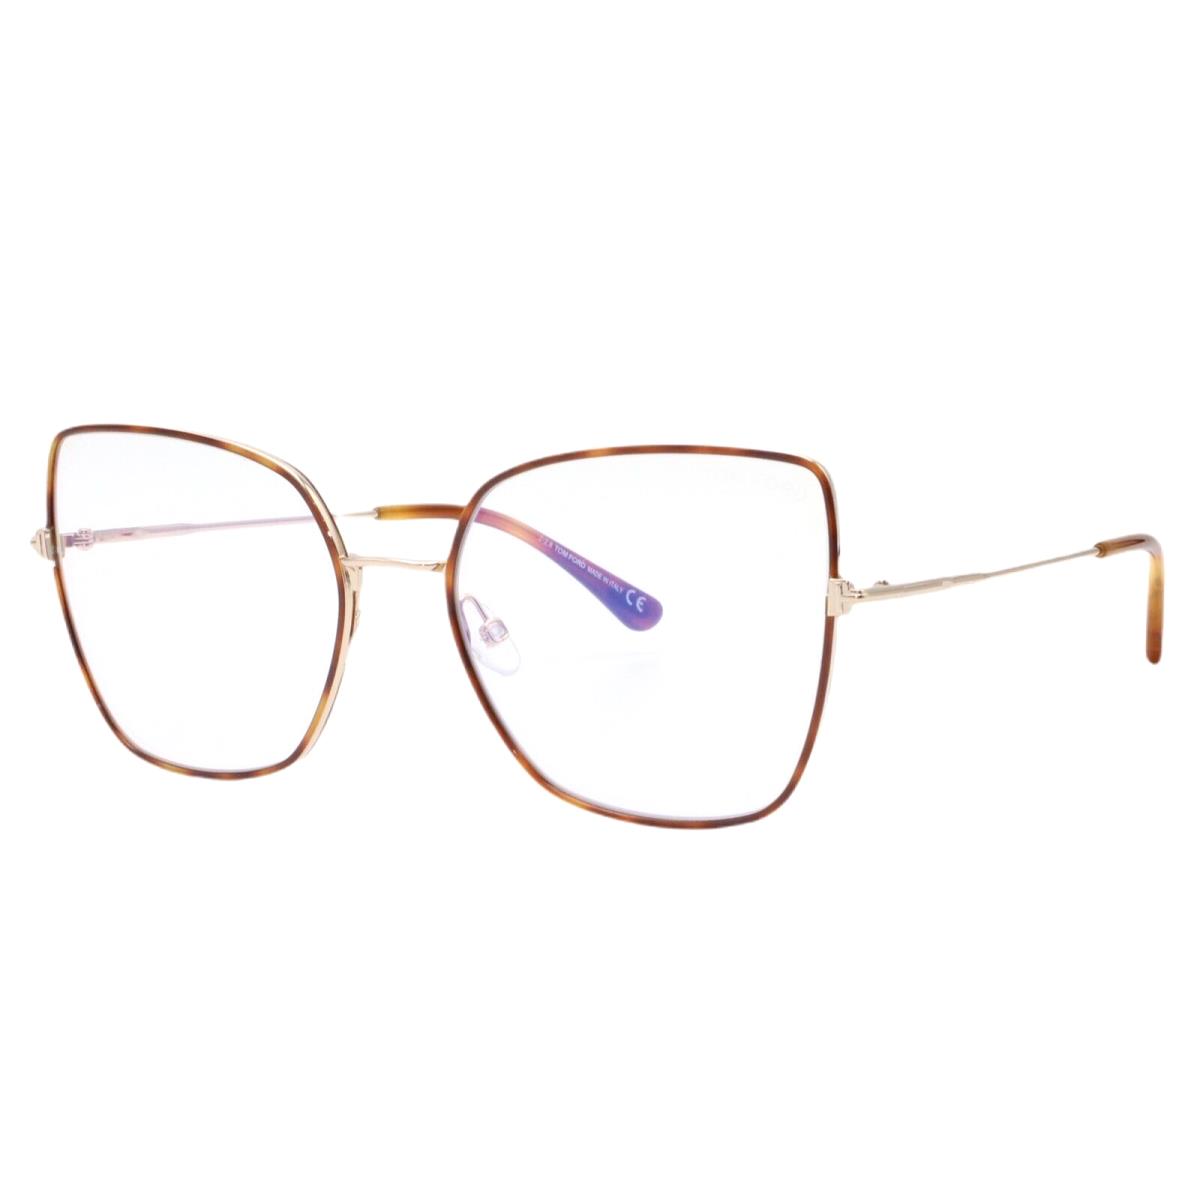 Tom Ford 5630-B 053 Havana Rose Gold Womens Eyeglasses 56-19-140 Blue Block Lens